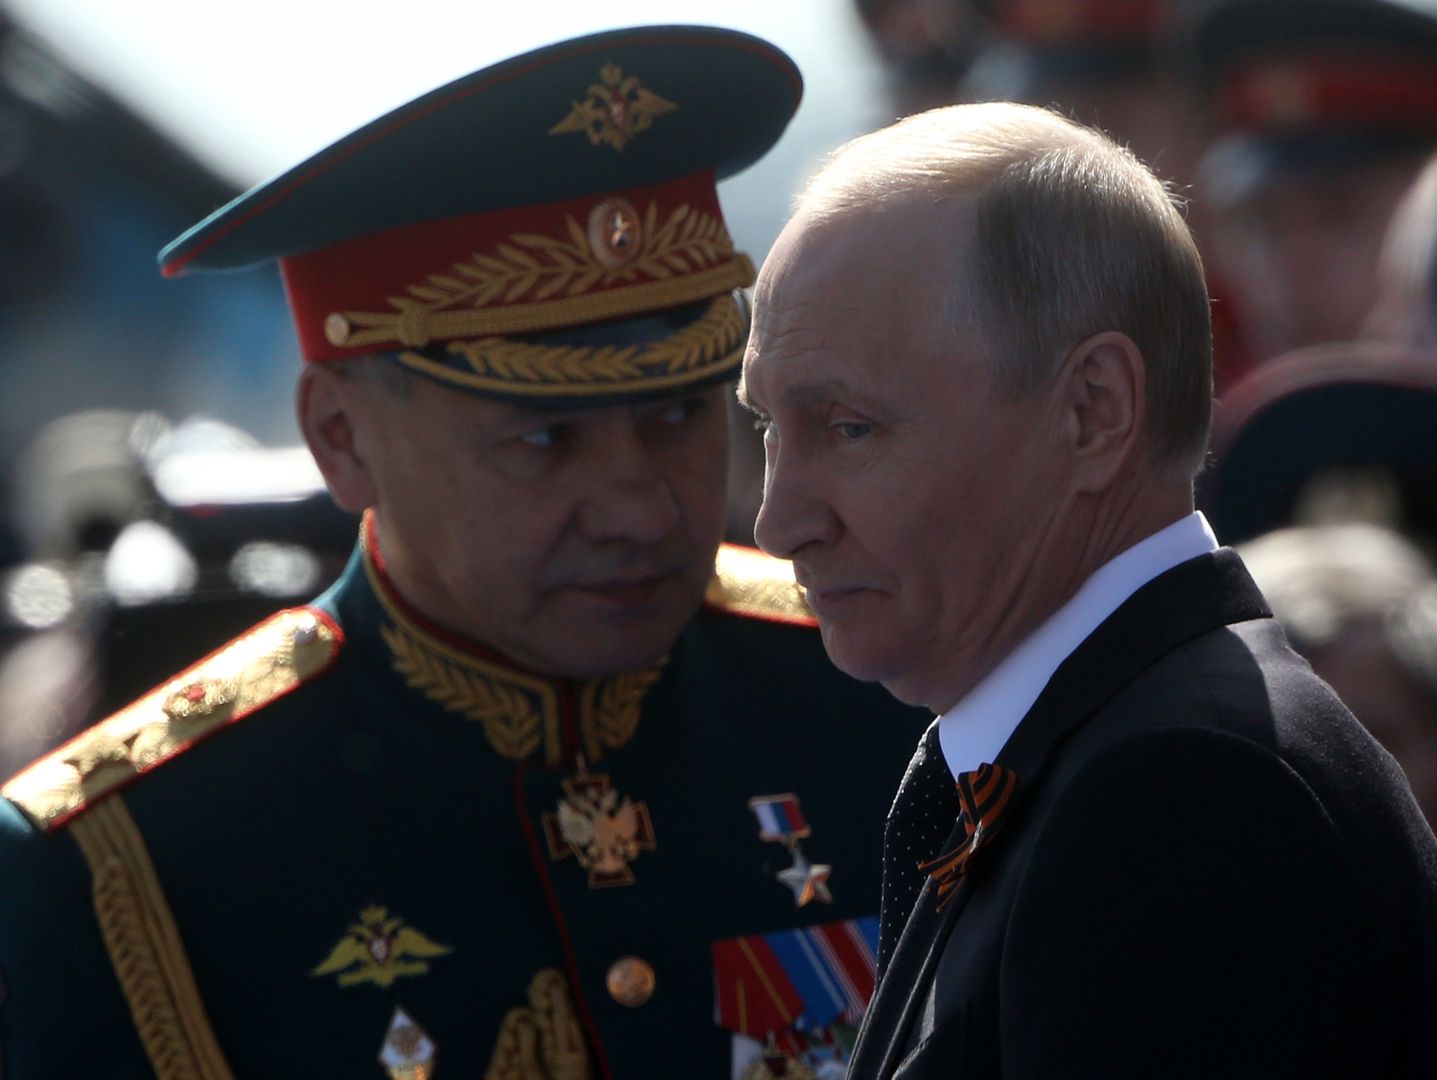 Rosja czeka na nokautujący cios? Ekspert wskazuje, kiedy to ma nastąpić